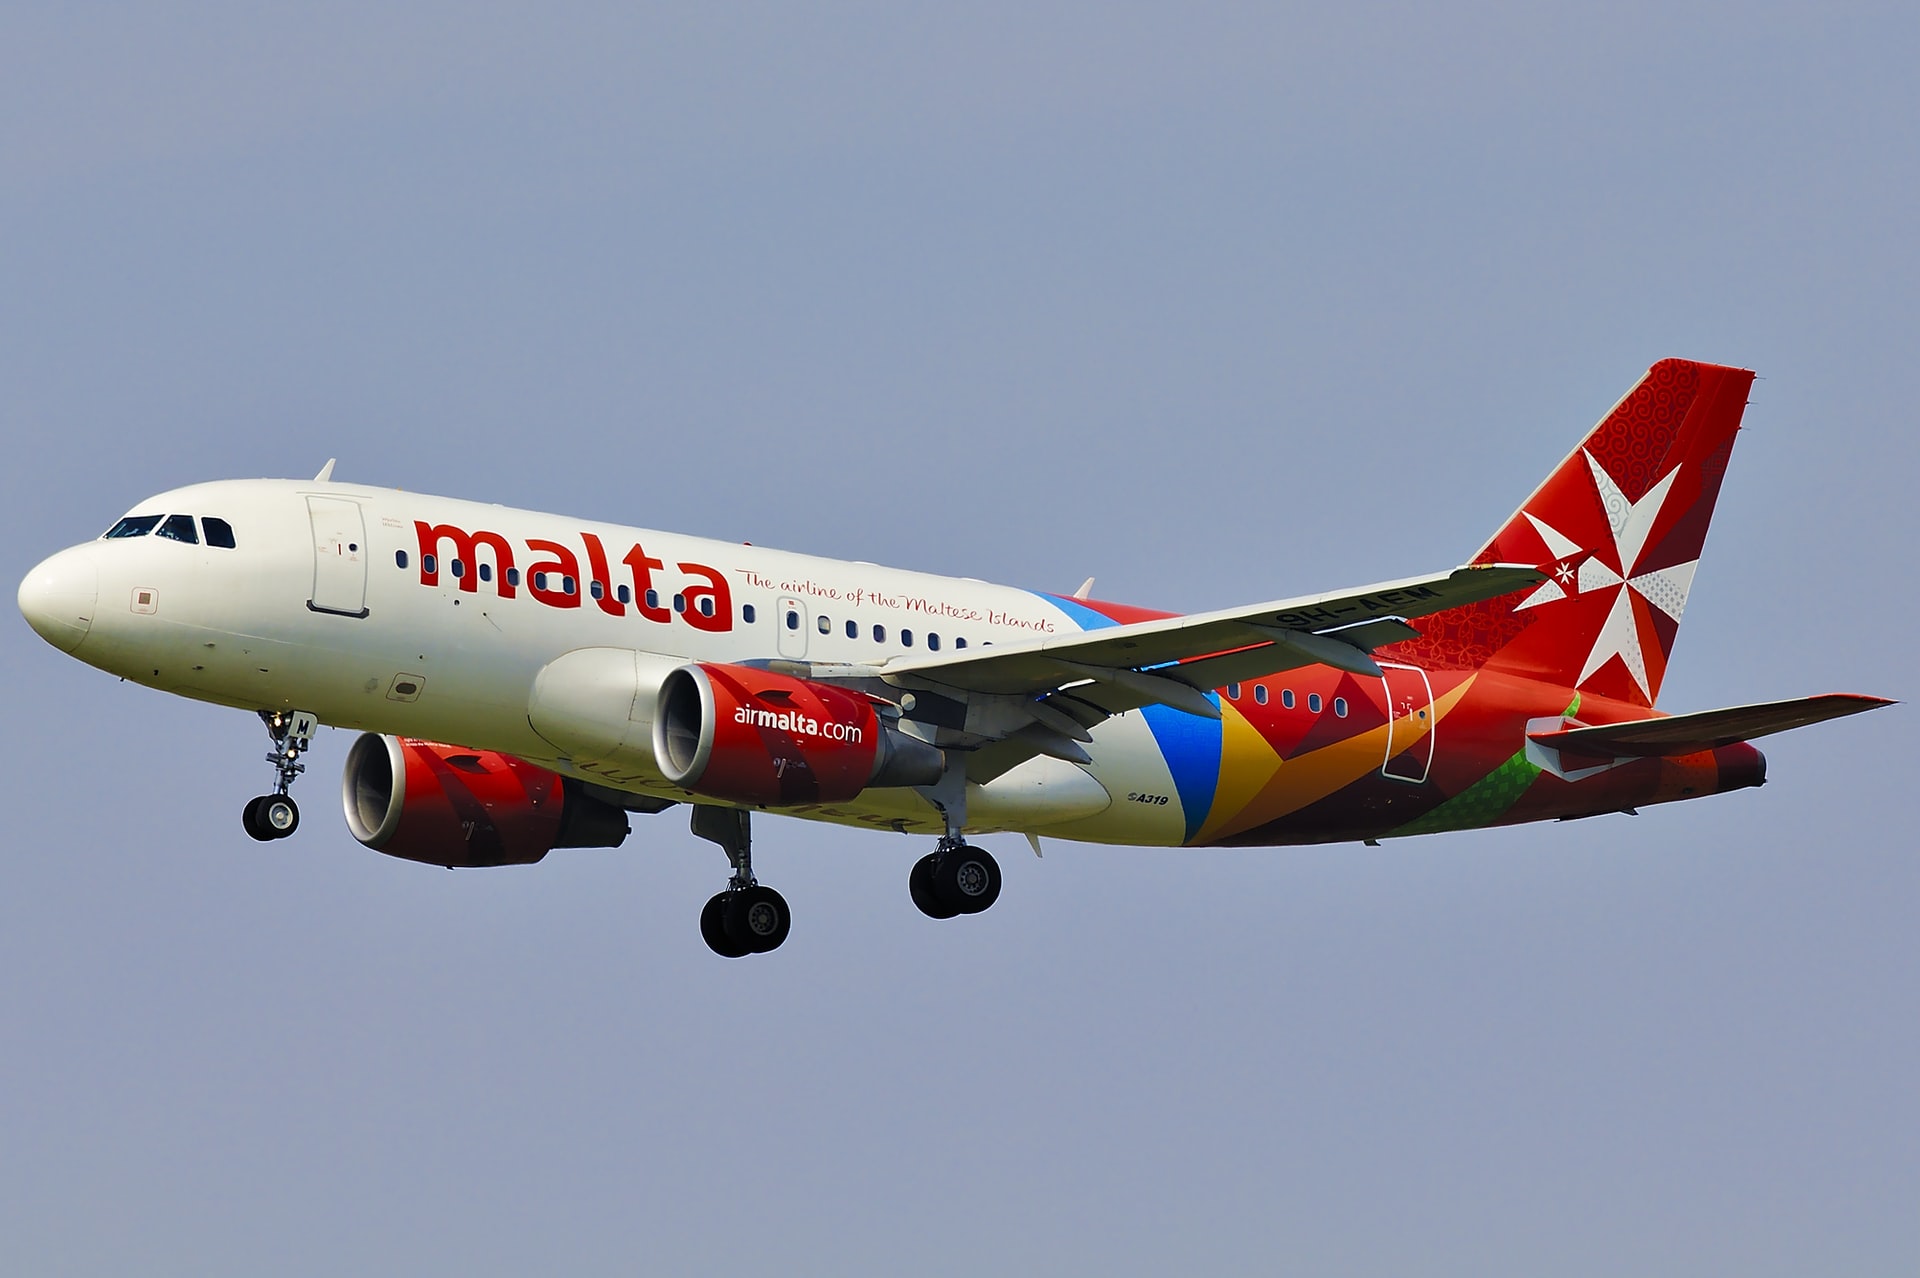 A320 Air Malta landing at Orly Airport